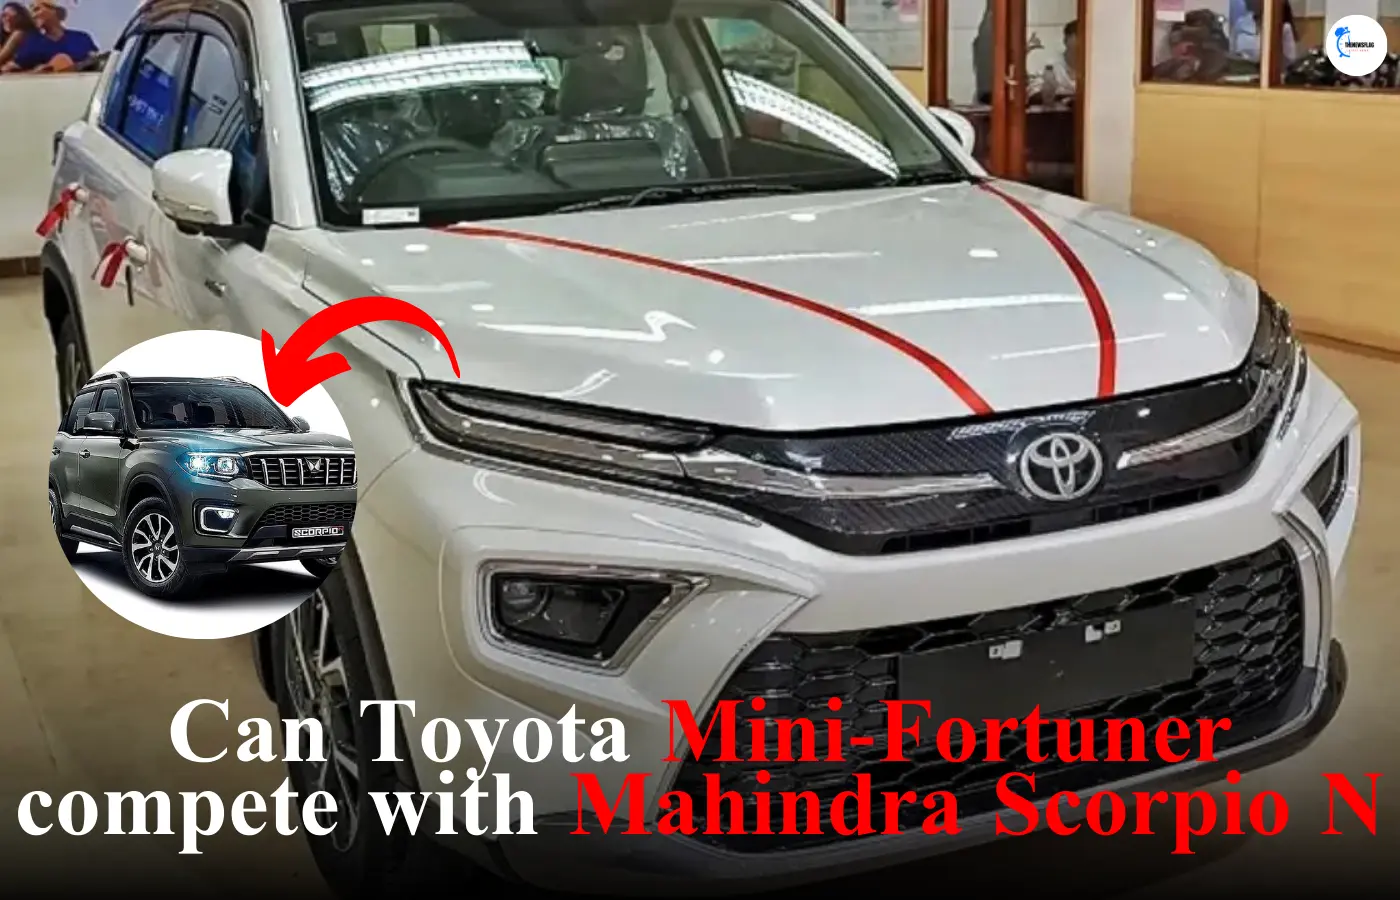 Toyota Mini-Fortuner